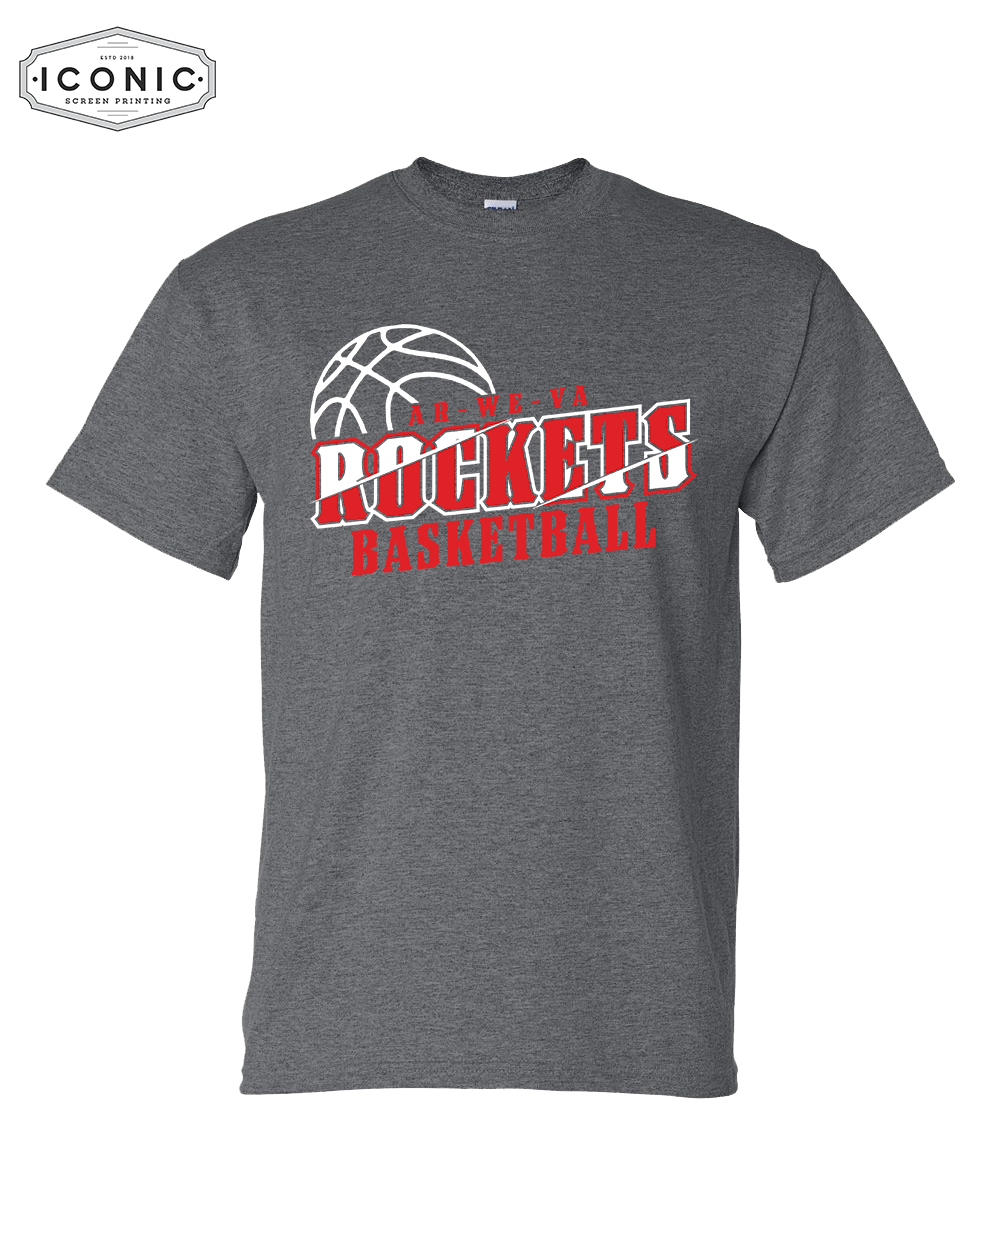 Rockets Basketball - DryBlend T-shirt